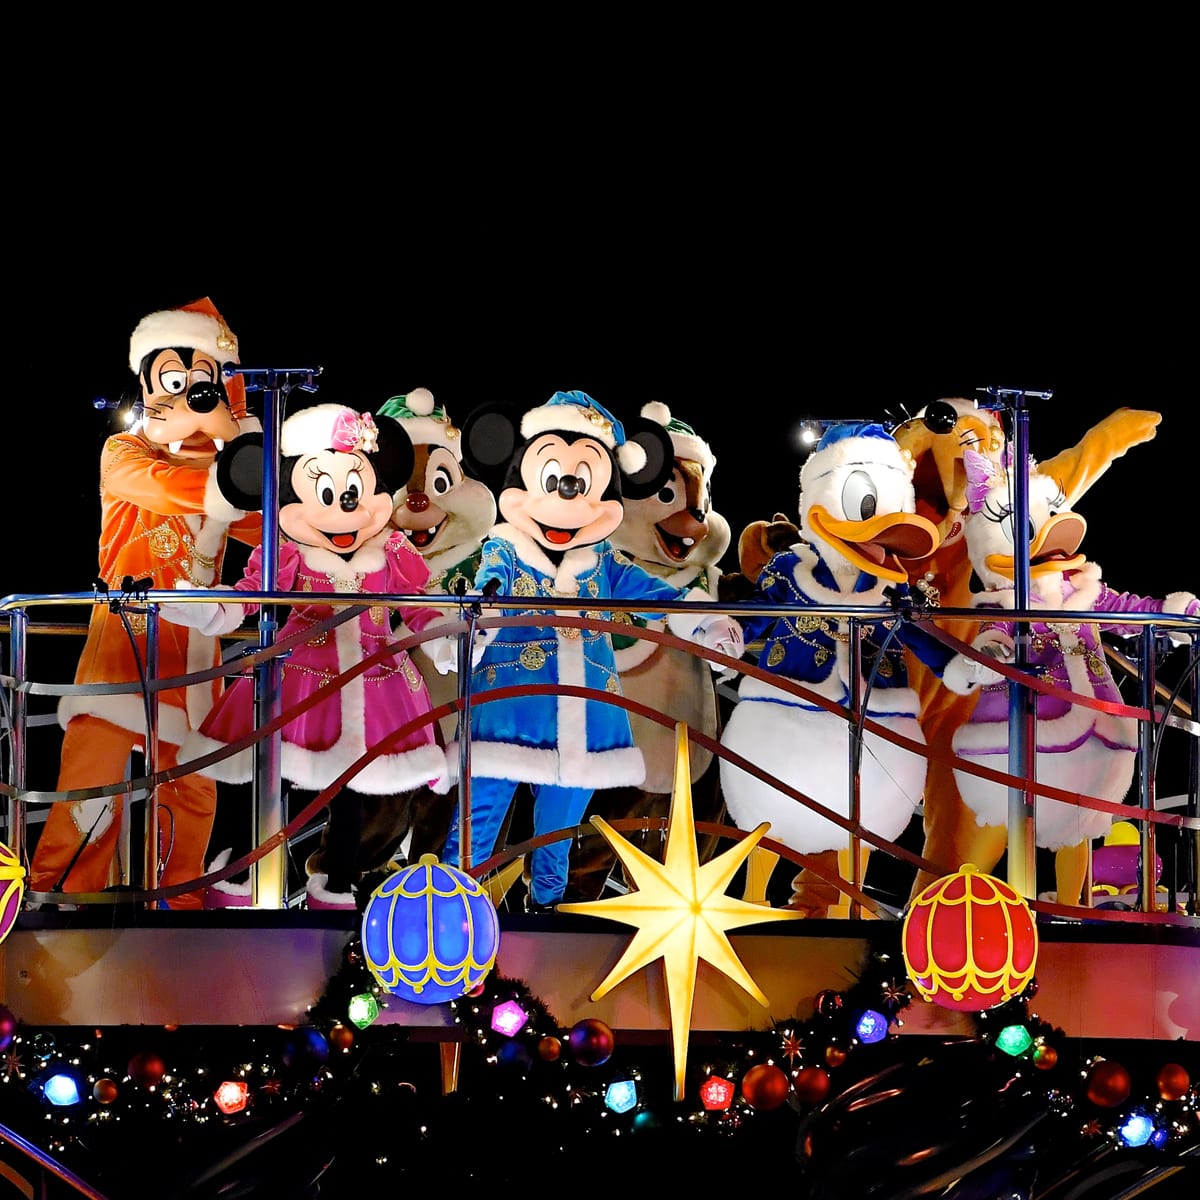 ついにフィナーレ 東京ディズニーシー ディズニー クリスマス19 カラー オブ クリスマス ニコニコニュース